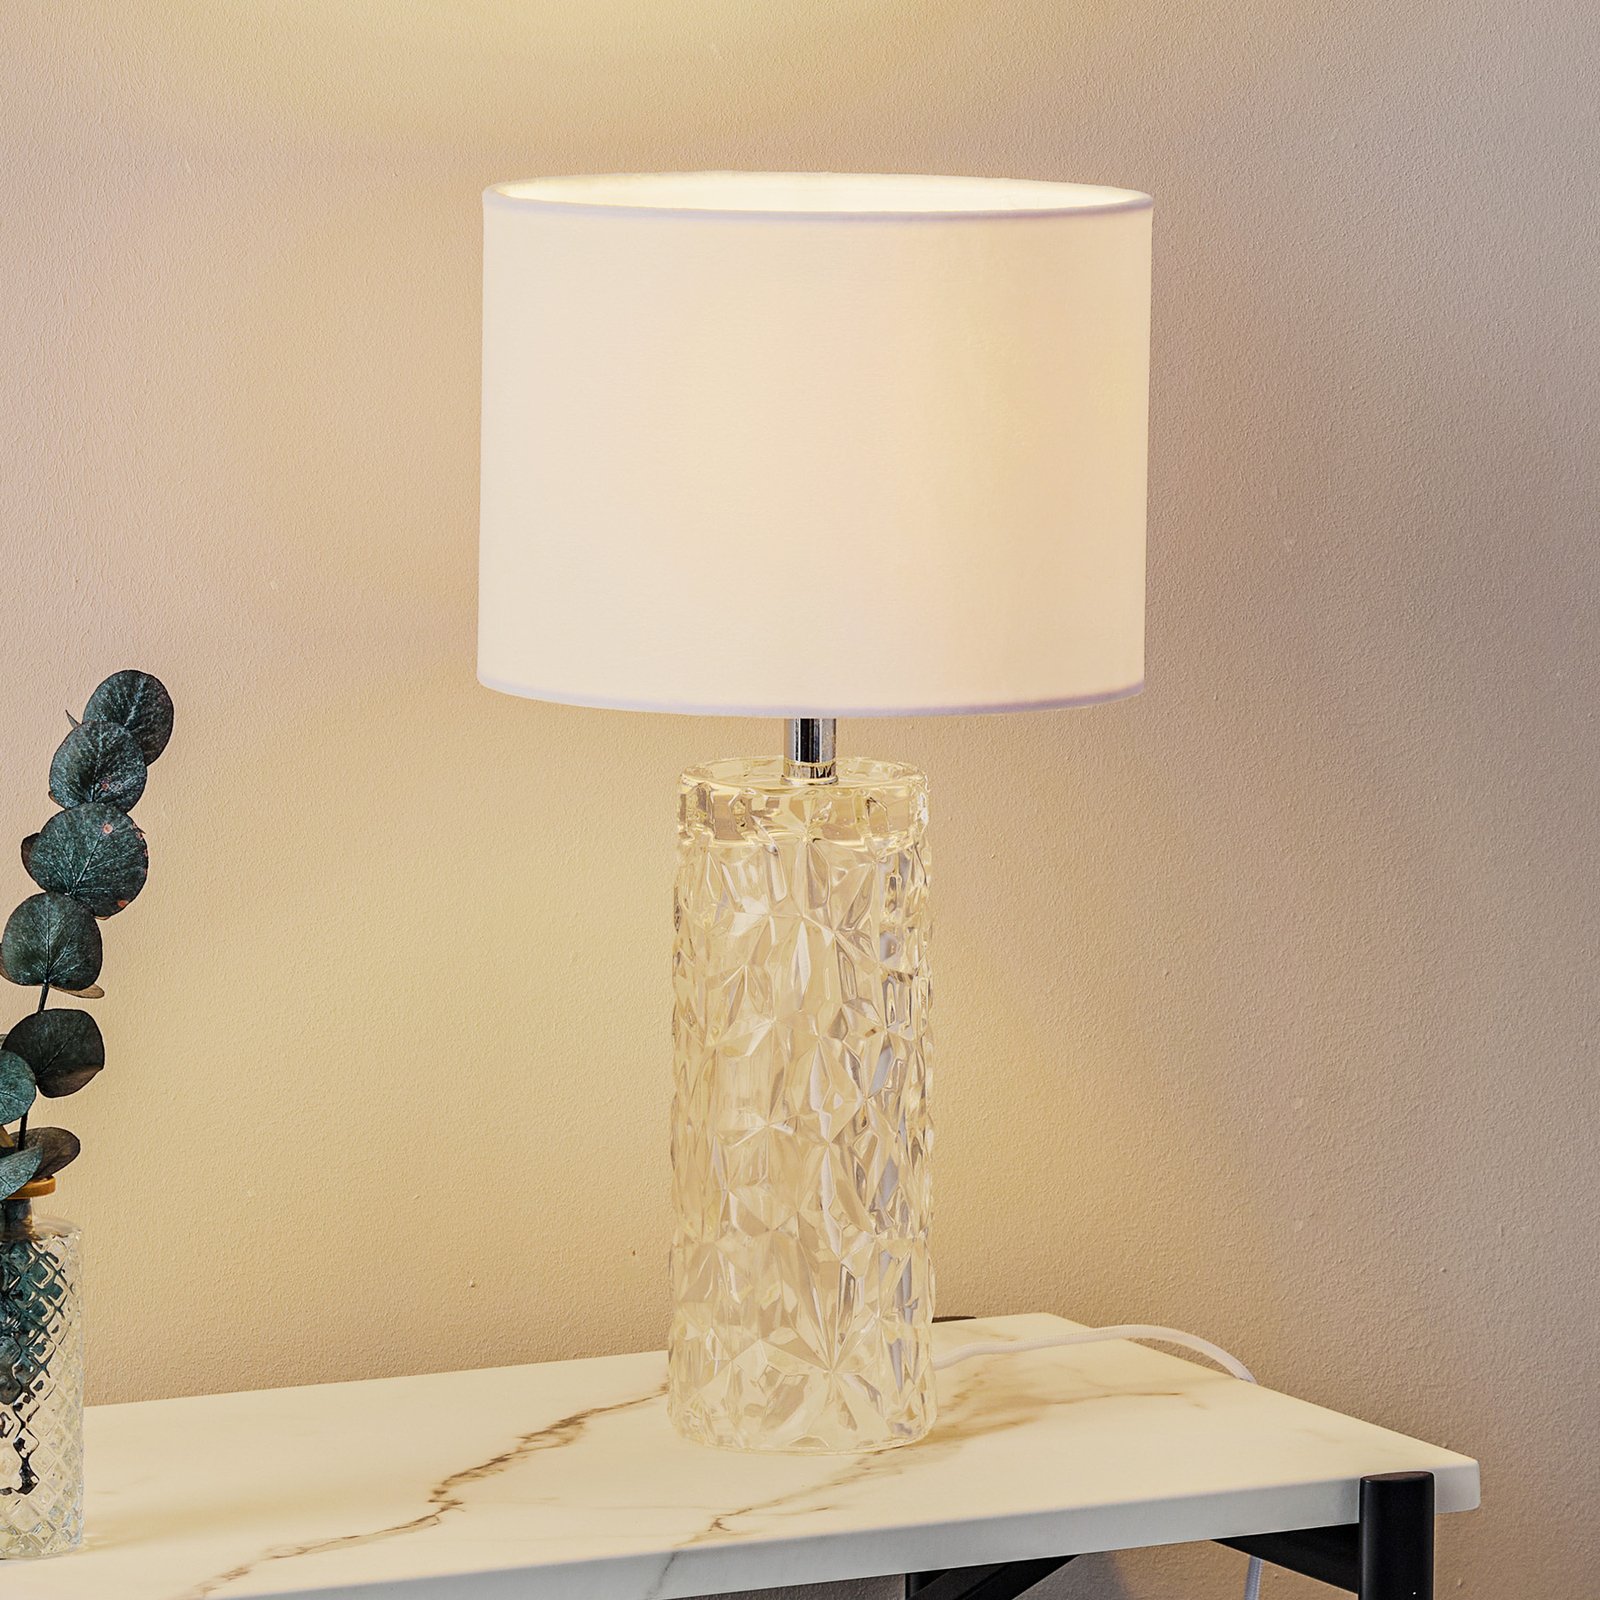 hvid bordlampe med tekstilskærm | Lampegiganten.dk